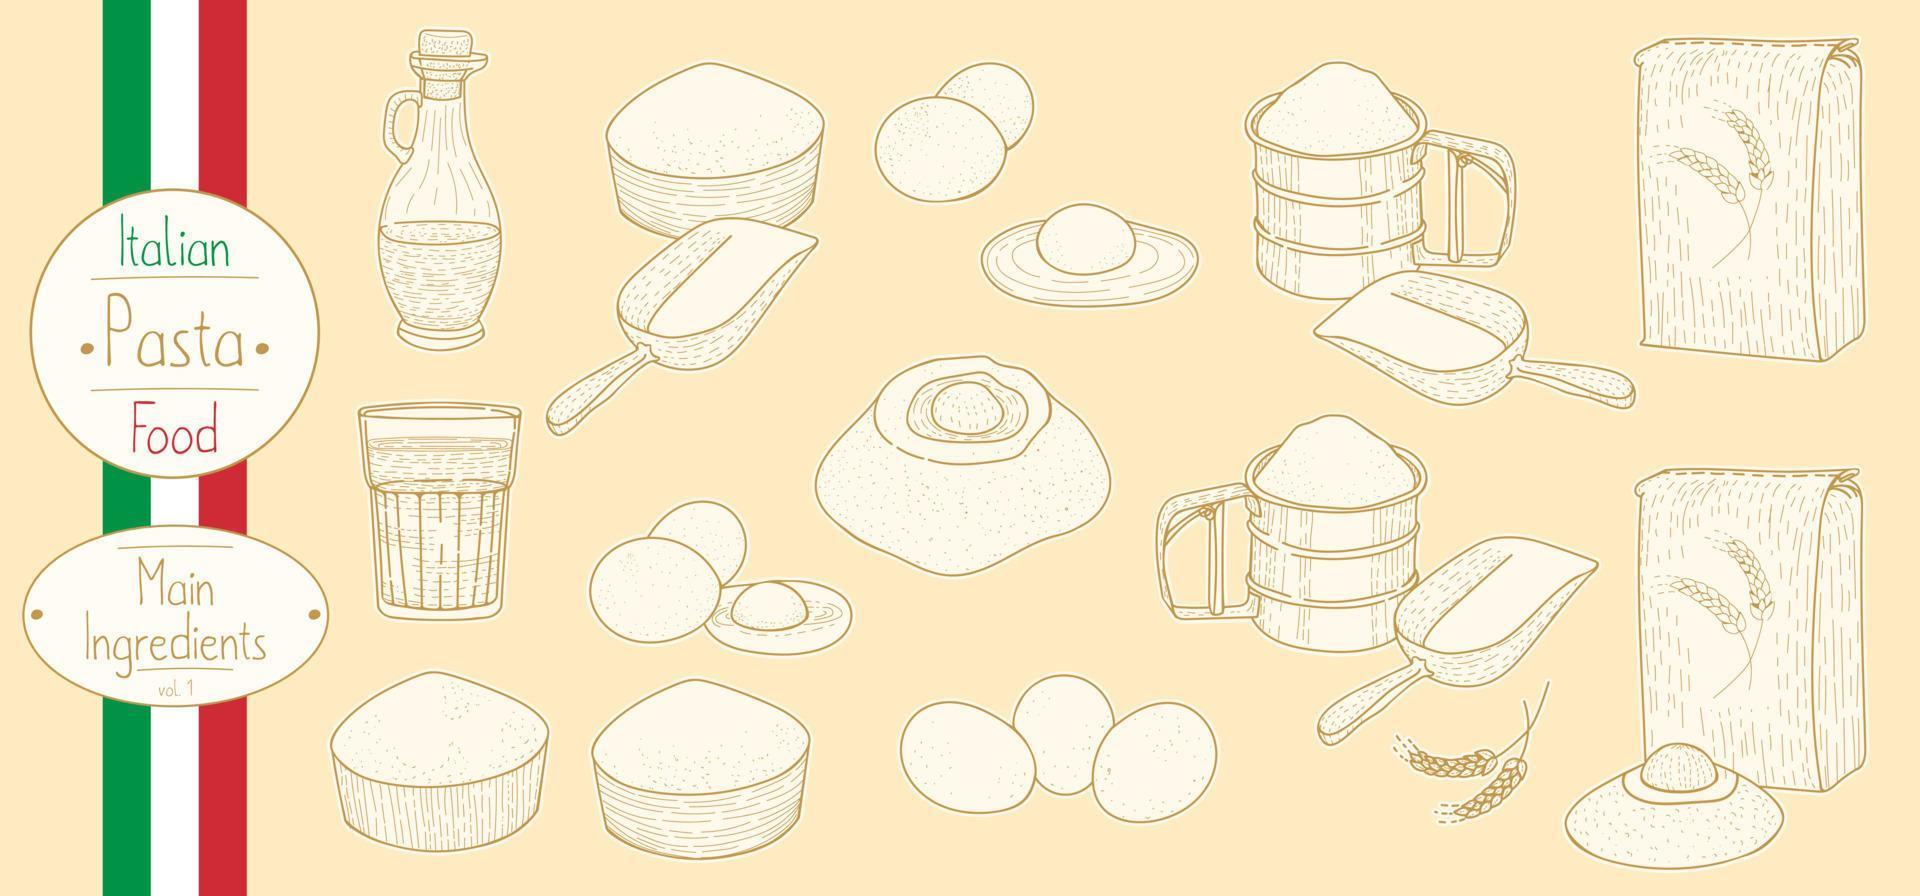 ingrédients principaux pour la cuisson des pâtes alimentaires italiennes, esquisse d'illustration dans un style vintage vecteur